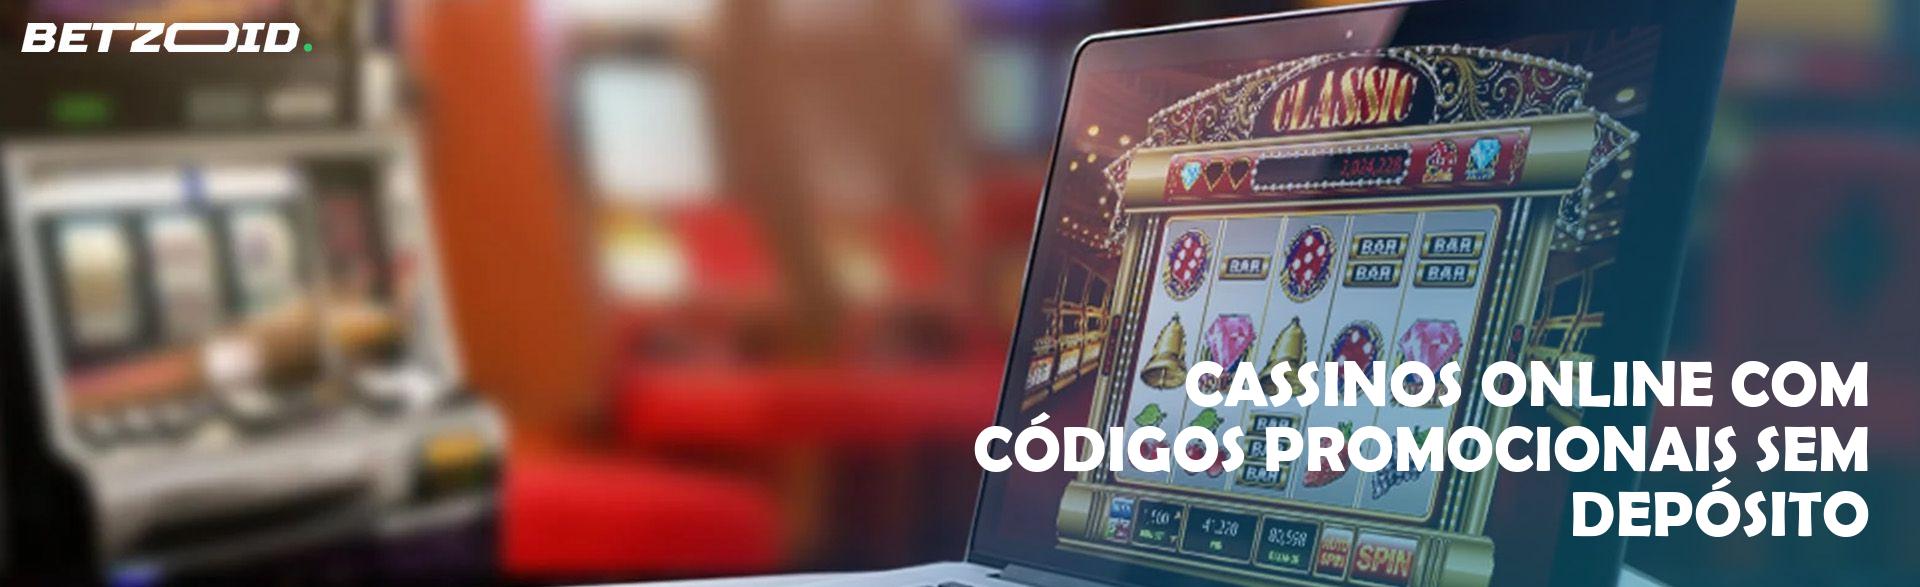 Cassinos Online com Códigos Promocionais sem Depósito.